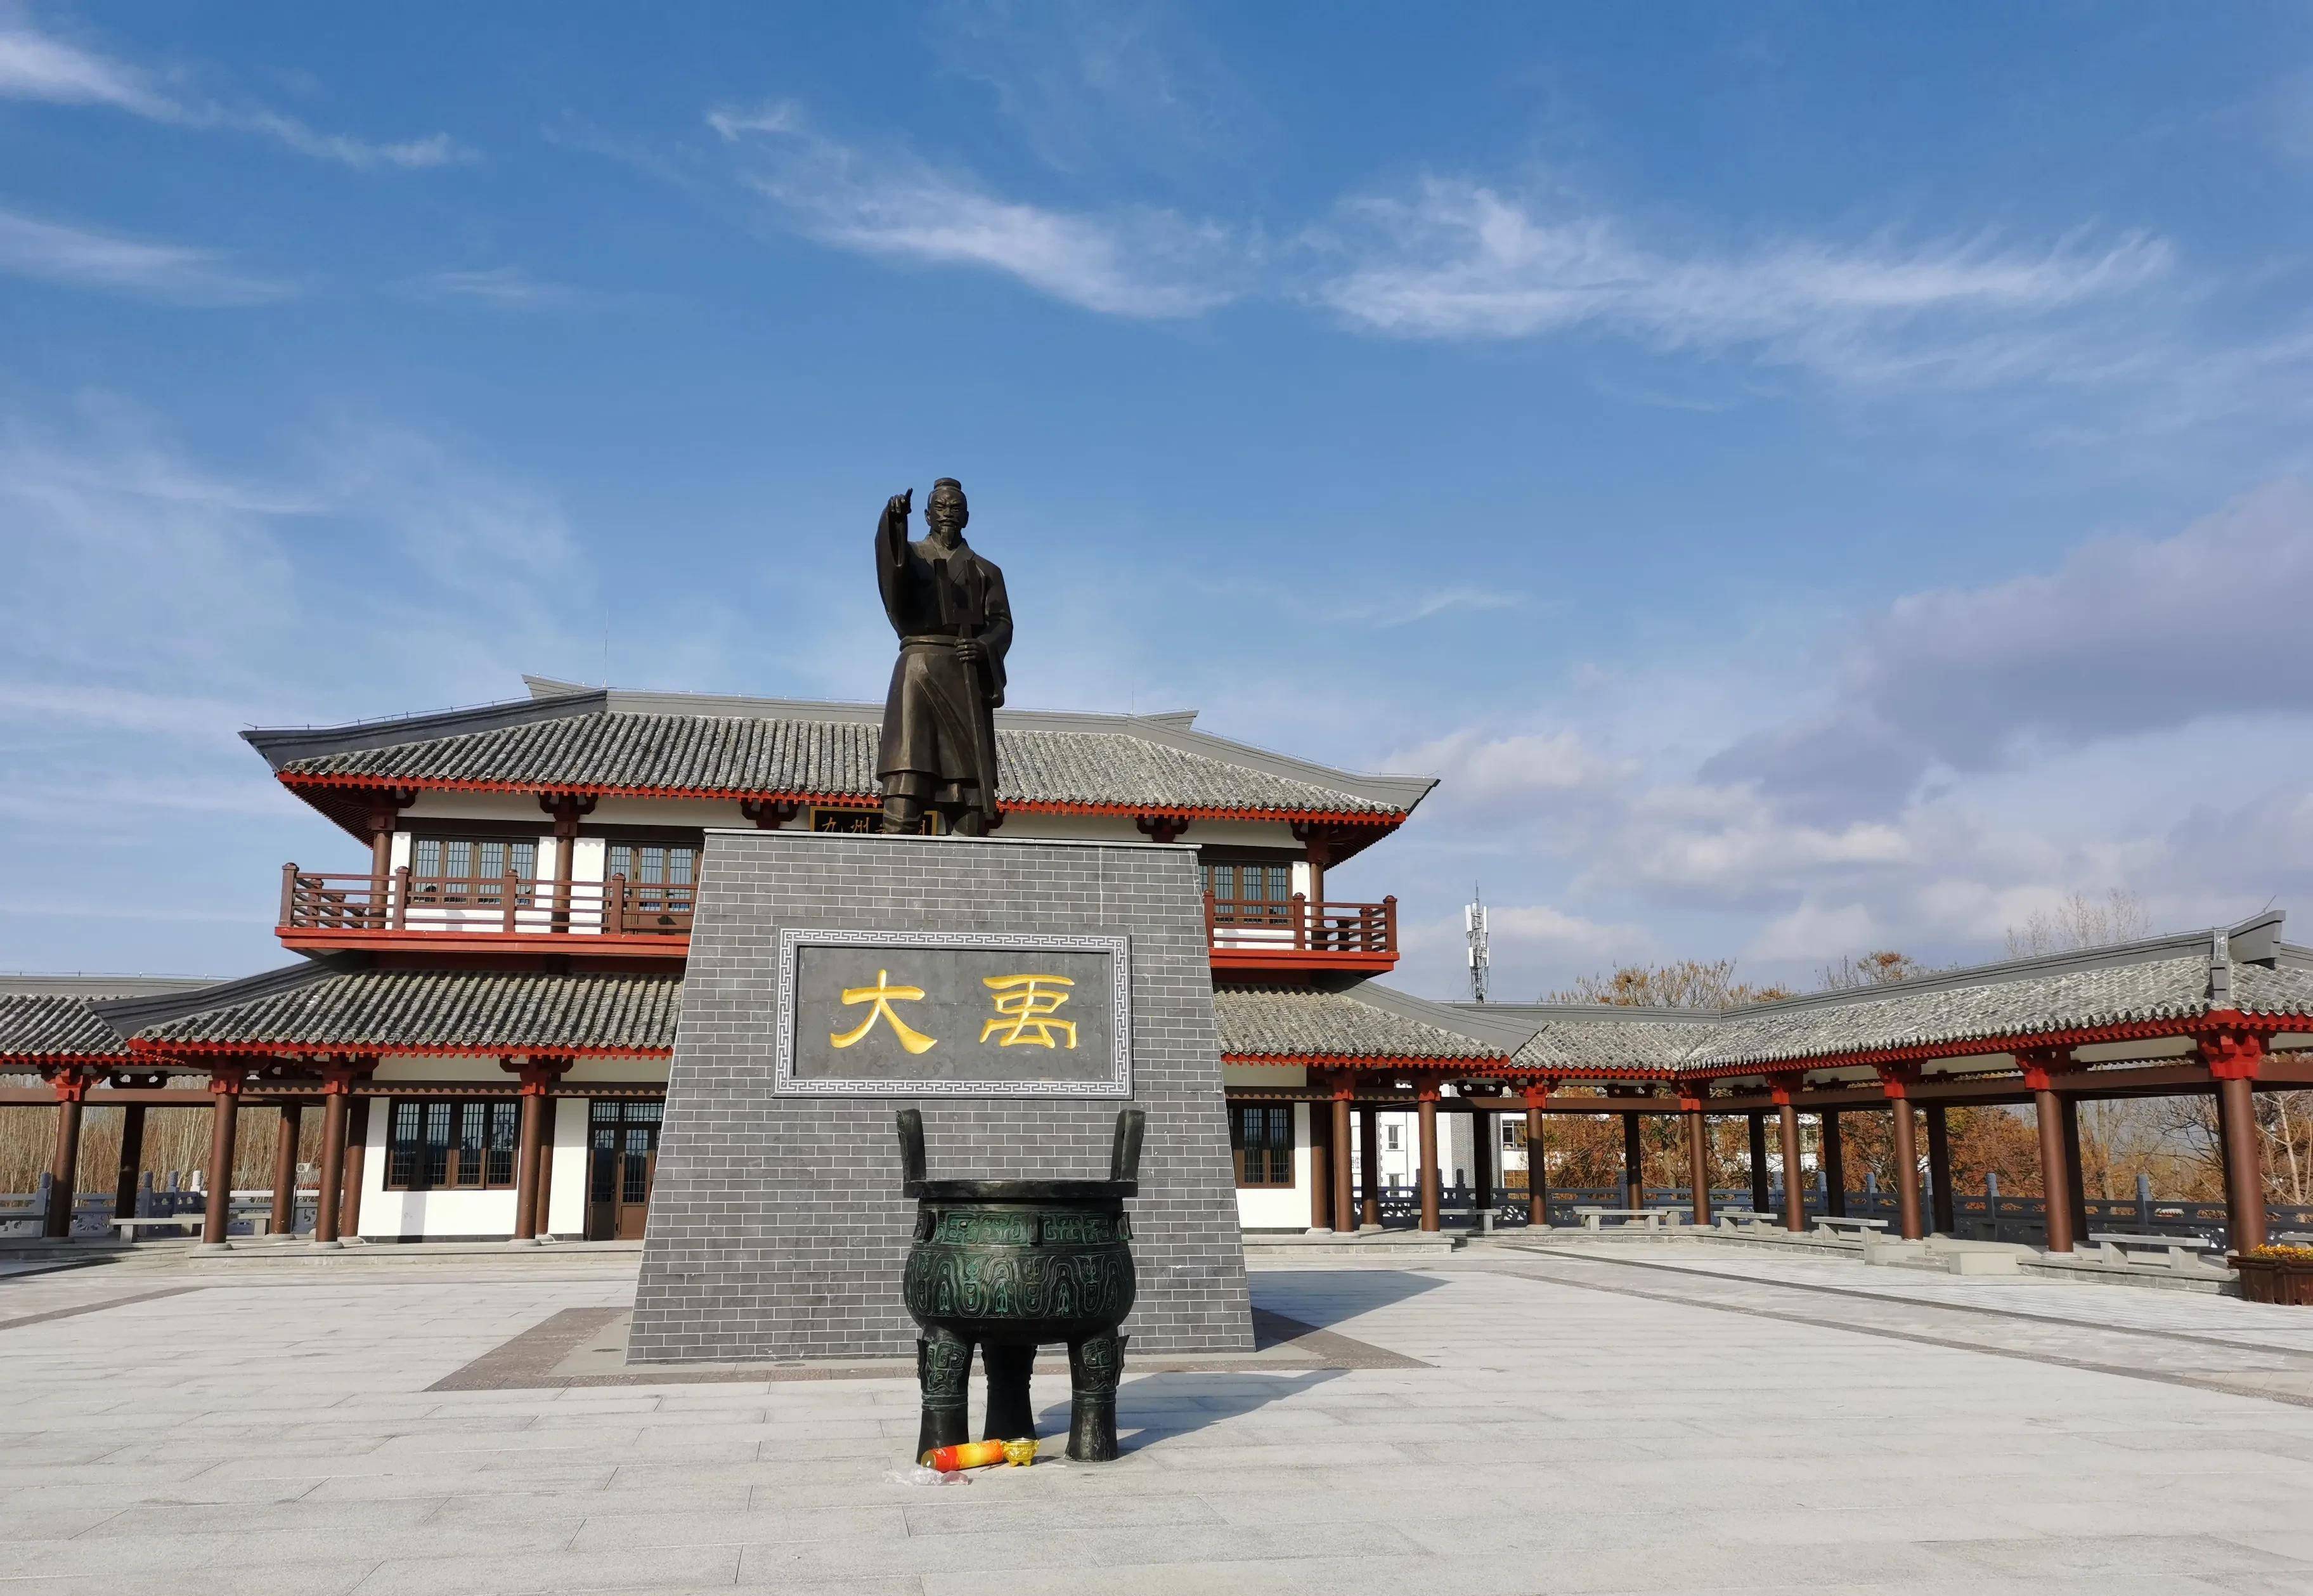 以大禹而命名一处景观,兖州大禹文化公园,现已免费对外开放